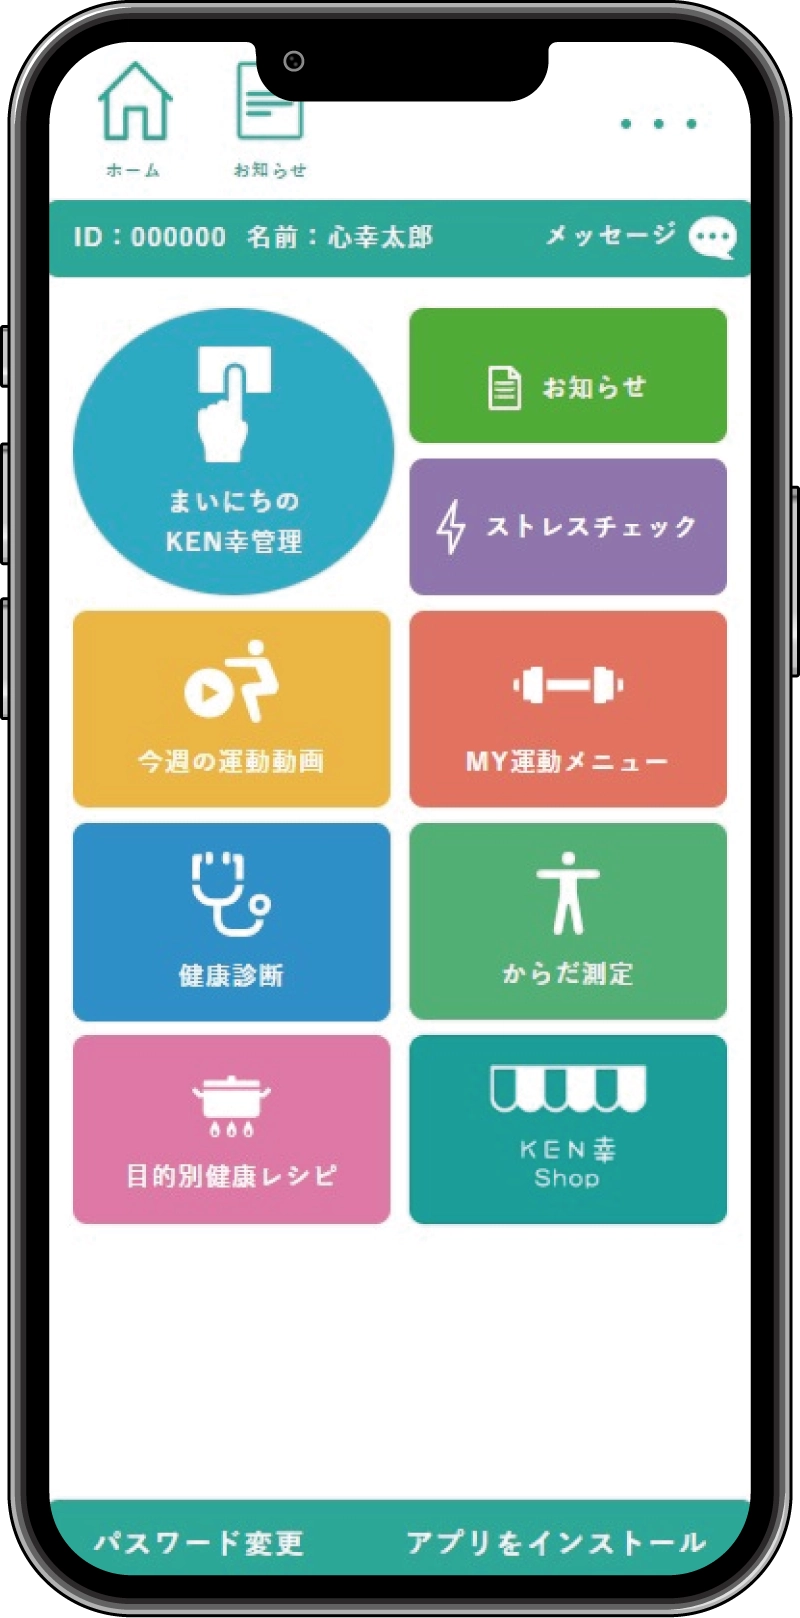 オフけんの健康アプリ「KEN幸」